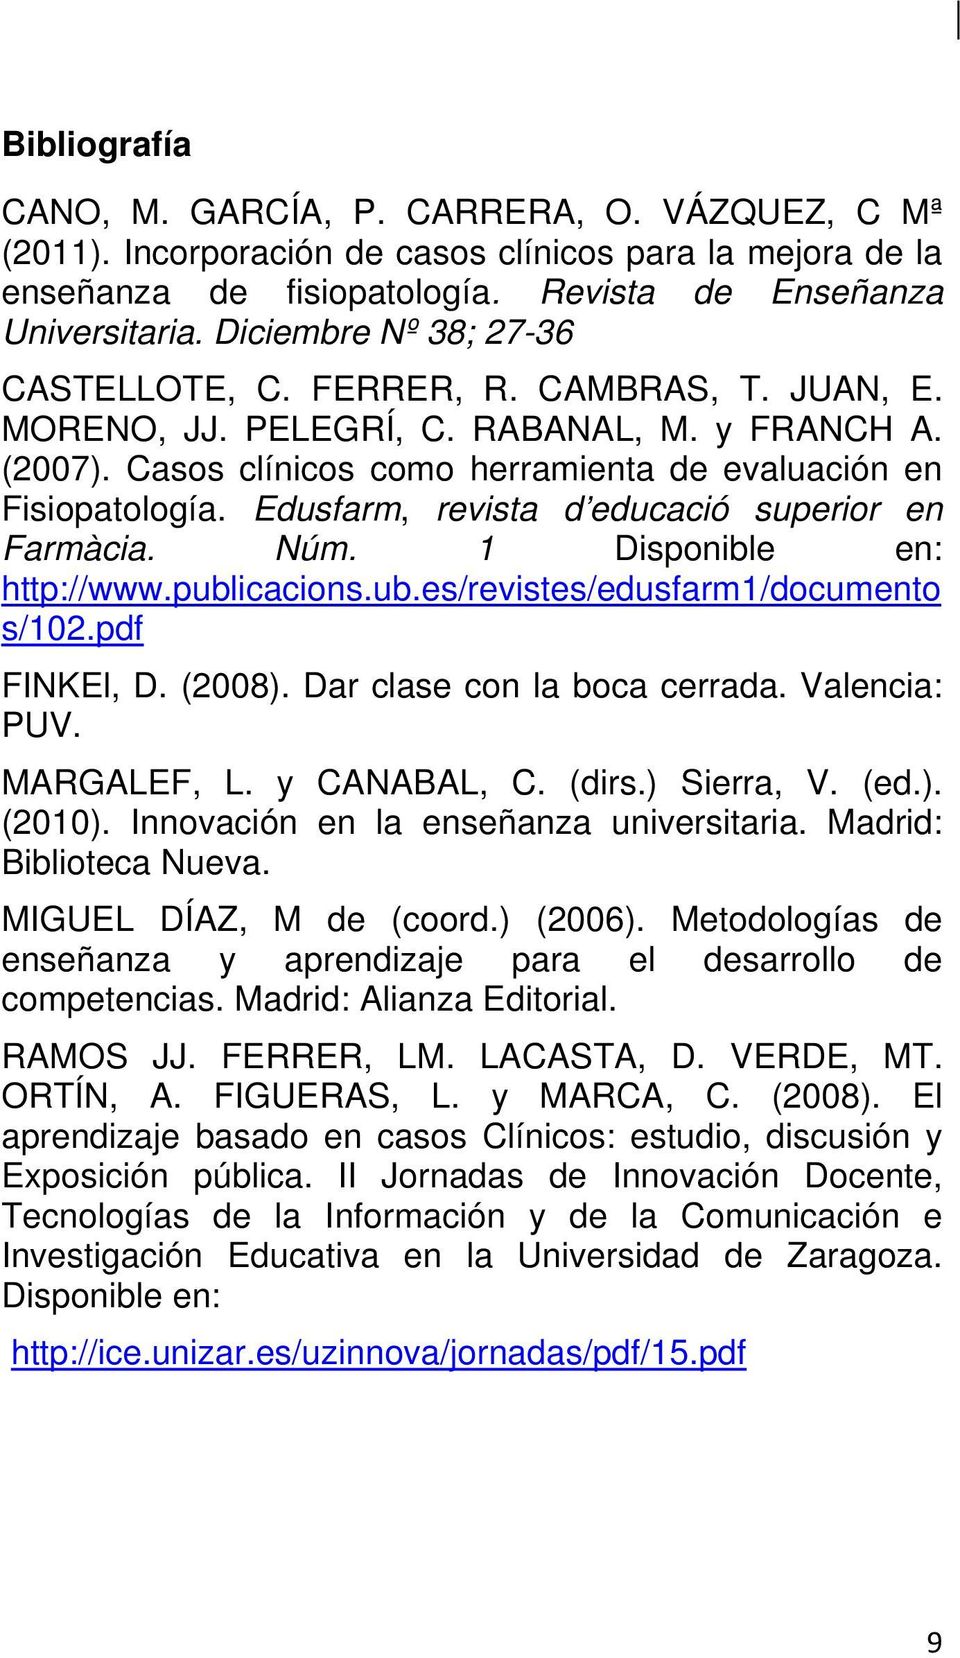 Edusfarm, revista d educació superior en Farmàcia. Núm. 1 Disponible en: http://www.publicacions.ub.es/revistes/edusfarm1/documento s/102.pdf FINKEl, D. (2008). Dar clase con la boca cerrada.